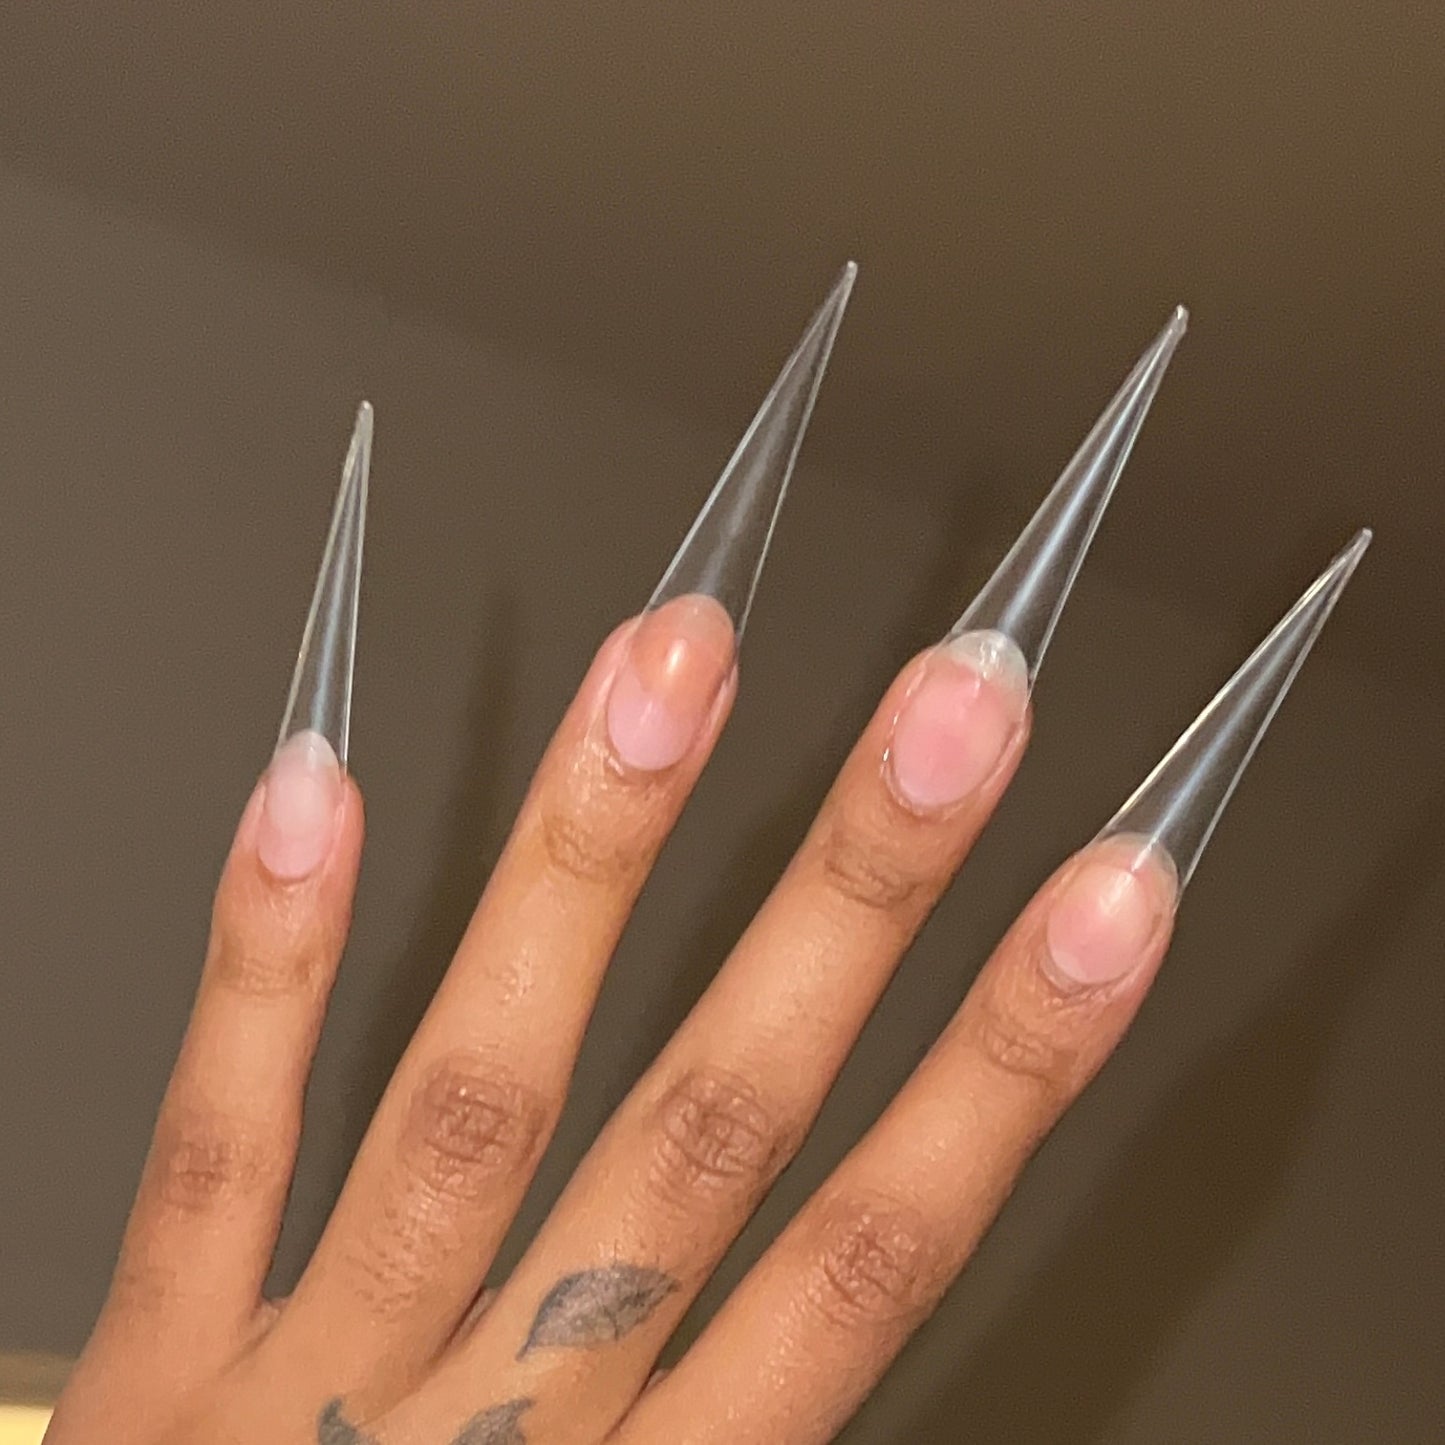 XXL SHARP STILETTO nail tips